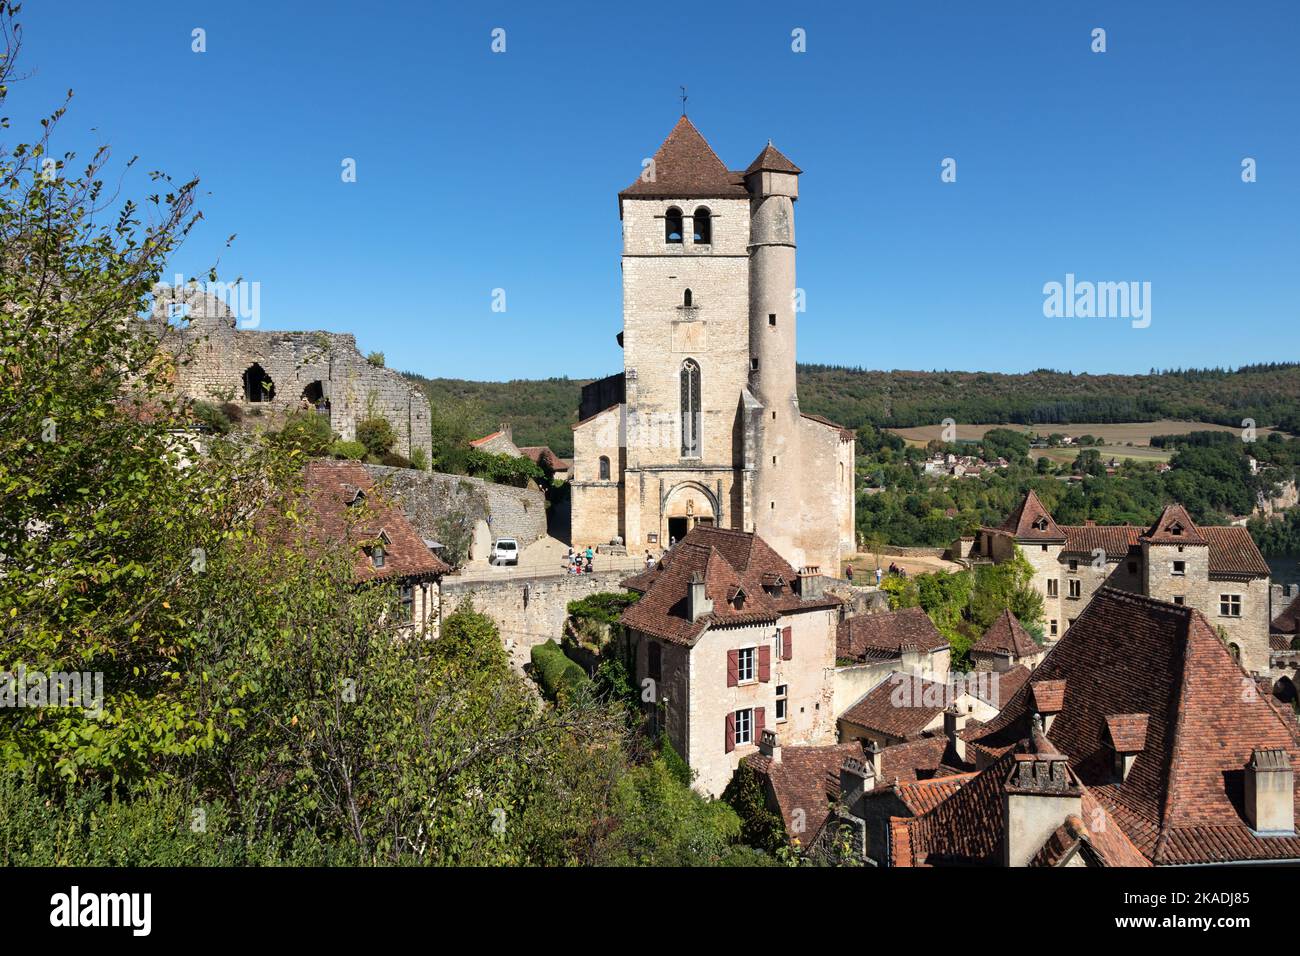 Le village médiéval de Saint-Cirq-Lapopie sur le Lot, département du Lot, France Banque D'Images